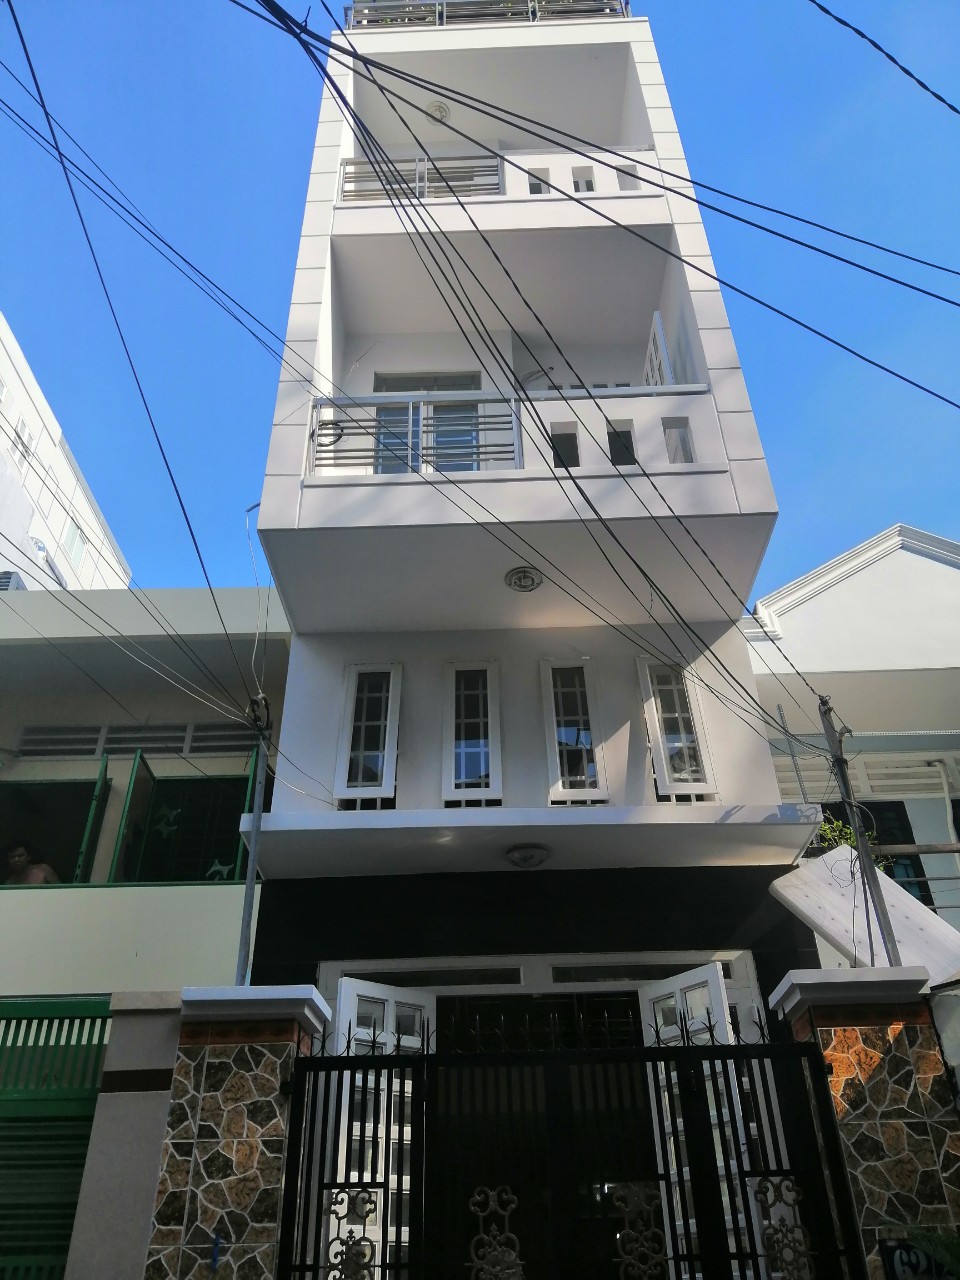 Cần bán gấp nhà mới xây 1 trệt 5 lầu gần chợ Tân Bình. DTSD: 212,3m2, khu biệt thự sang chảnh